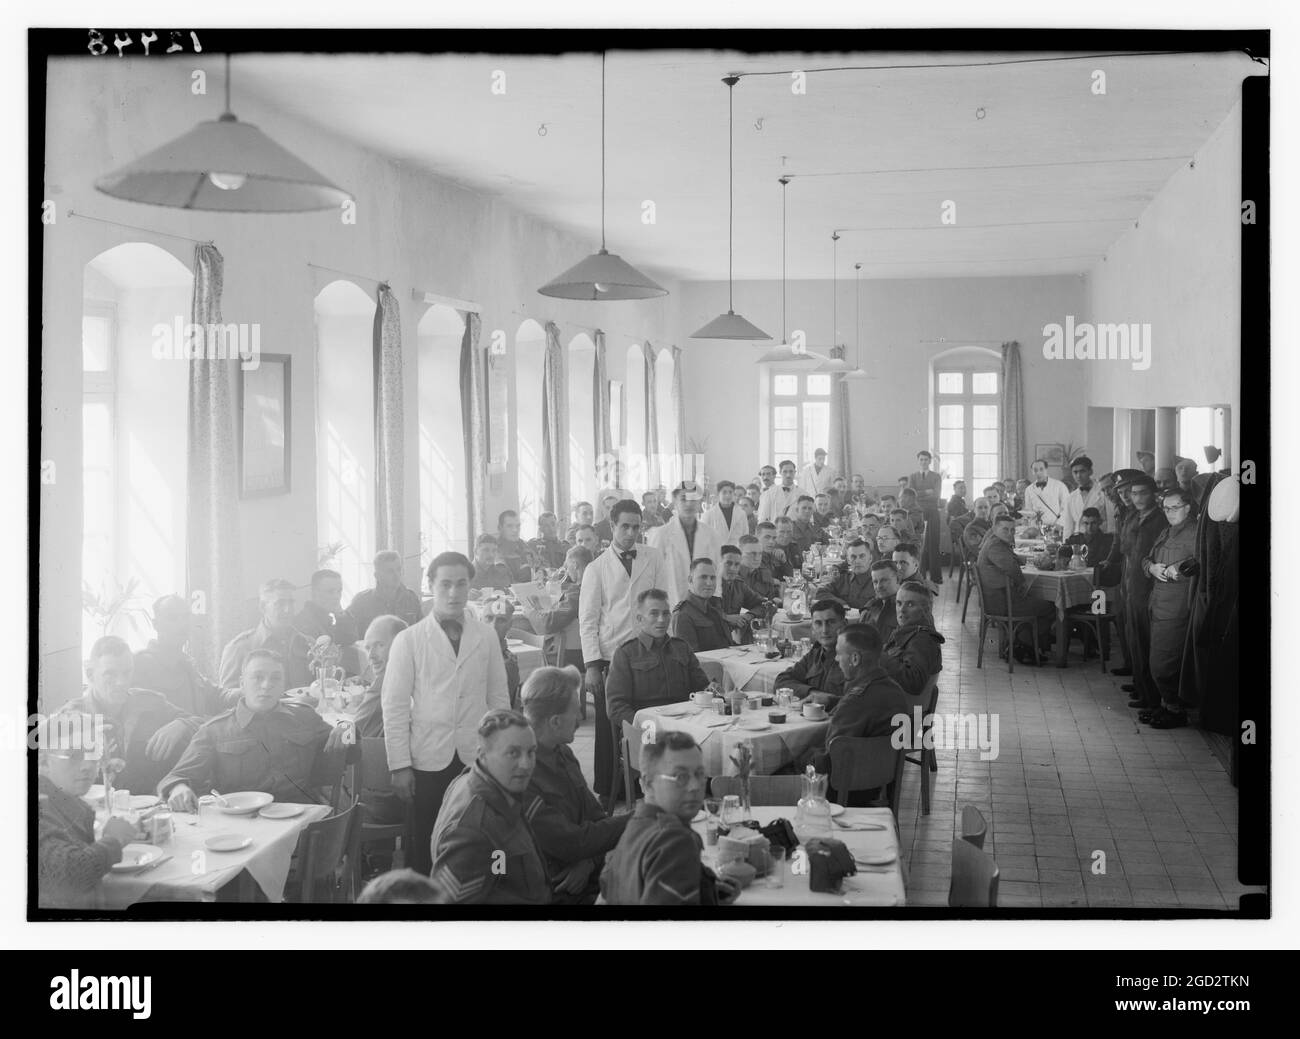 Des hommes de service et du personnel d'attente ou des patieurs dans la salle à manger de l'auberge YMCA (ancien bureau de poste) environ entre 1940 et 1946 Banque D'Images